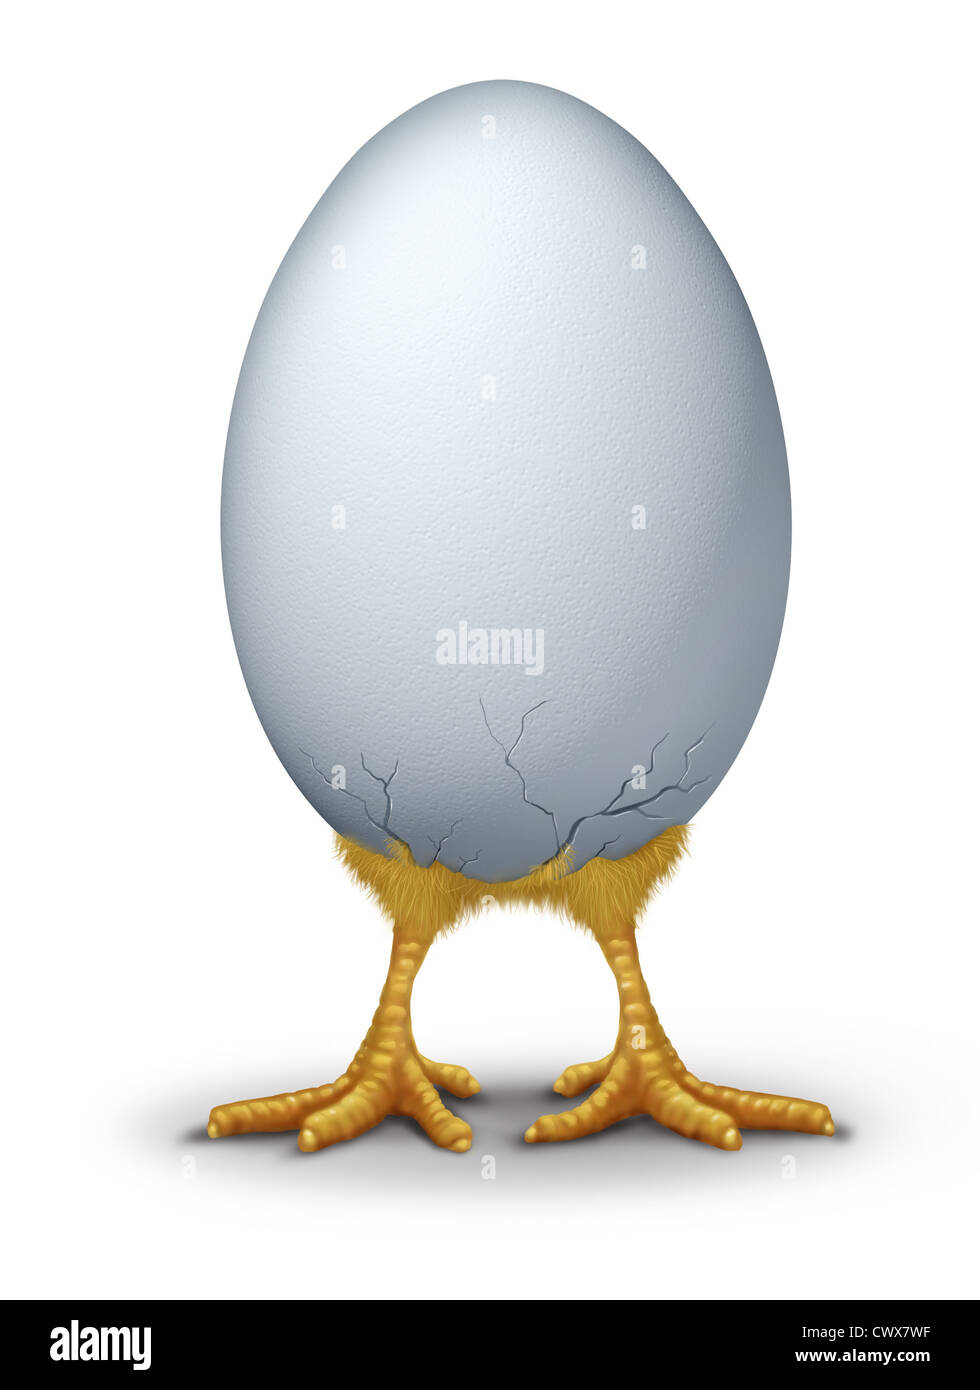 Funny easter egg avec humour hatchling baby bird chick briser le nouveau shell montrant la vie nouvelle. Banque D'Images